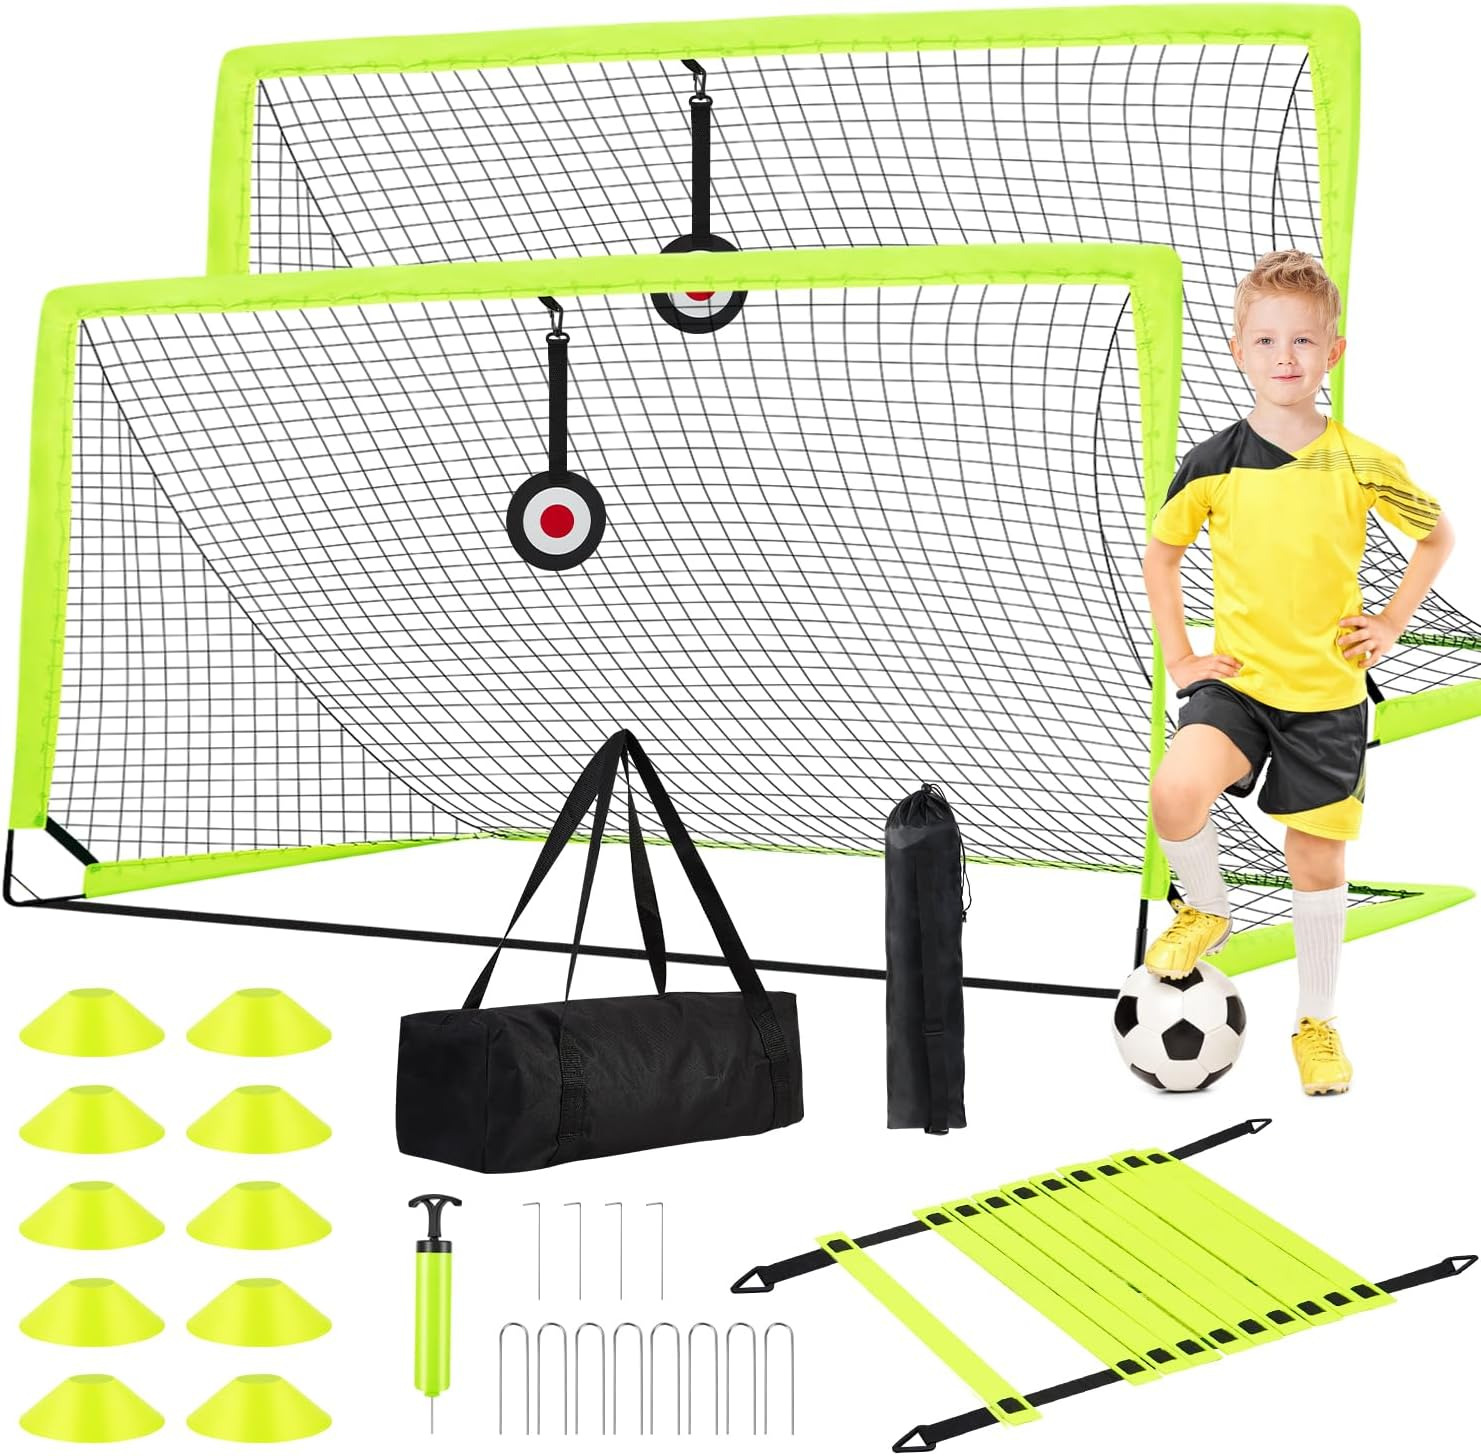 Soccer Goal - Set of 2 Soccer Nets, 6X4 Ft Portable Pop up Soccer Goals for Back